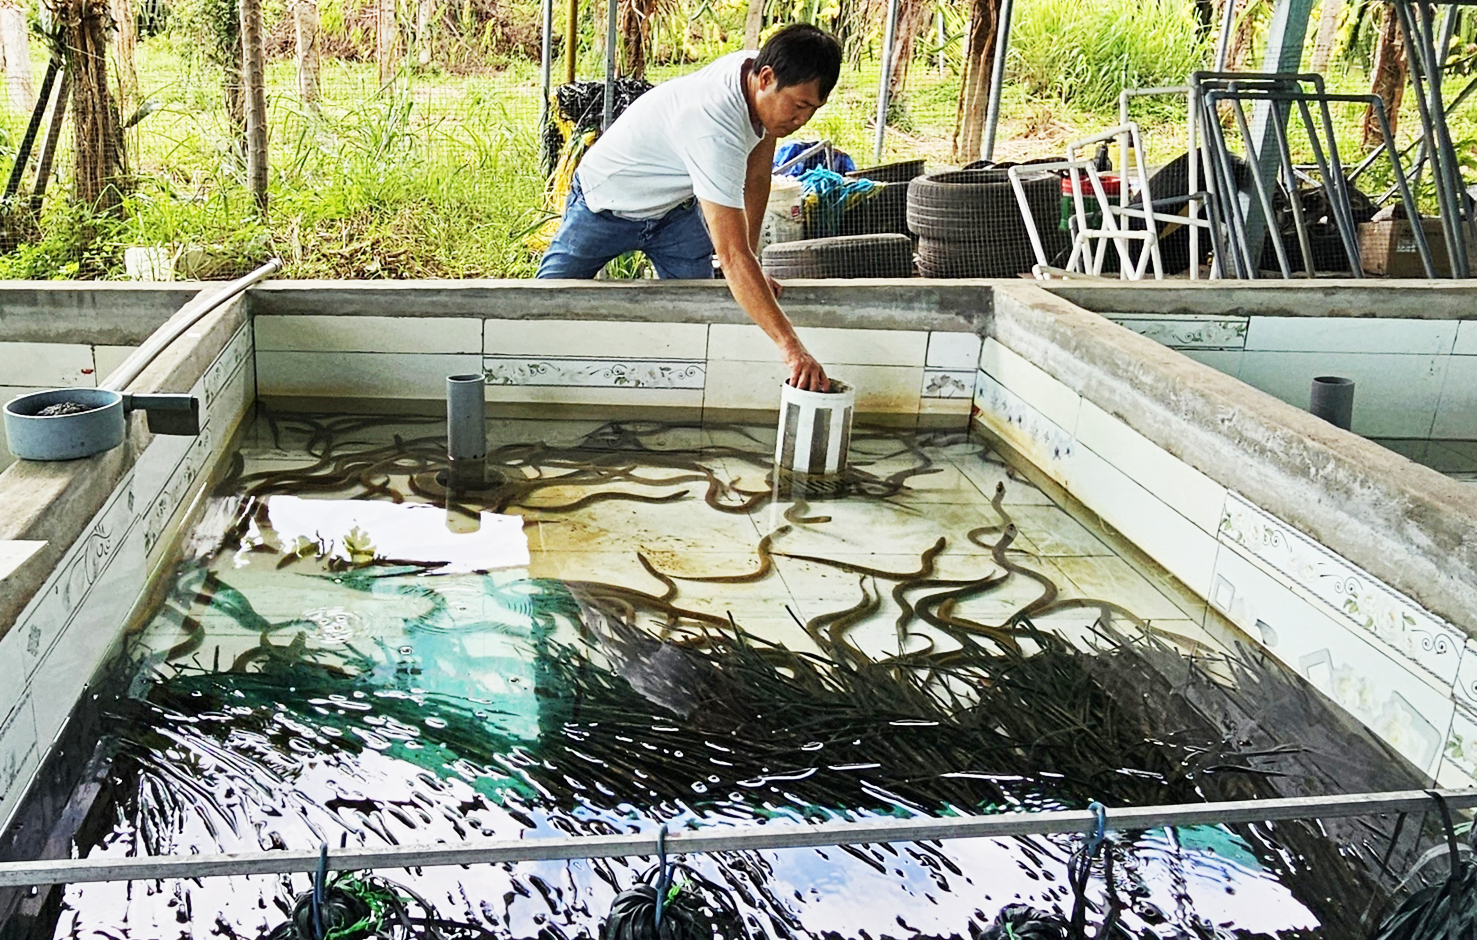 Mô hình nuôi lươn không bùn của anh Đặng Minh Hiệp ở xã Hàm Mỹ, huyện Hàm Thuận Nam (Bình Thuận). Ảnh: KS.